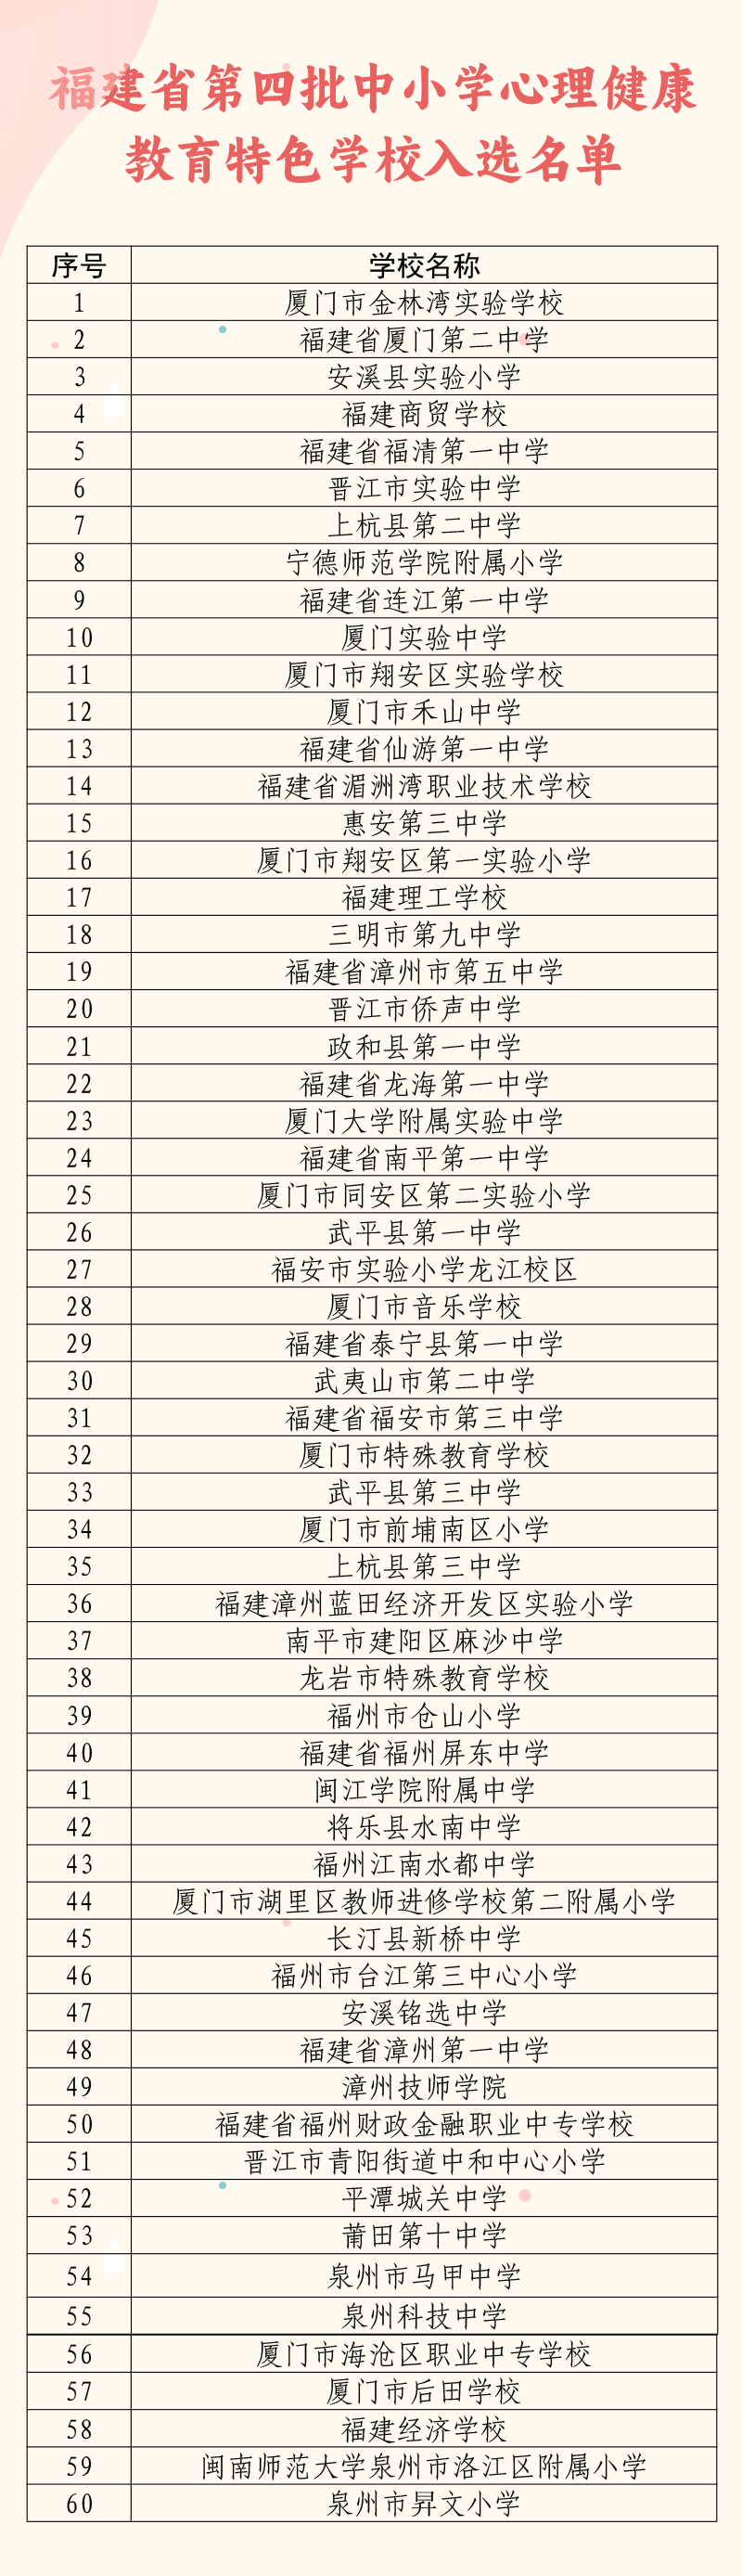 福建省第四批中小学心理健康教育特色学校和名师工作室名单公布